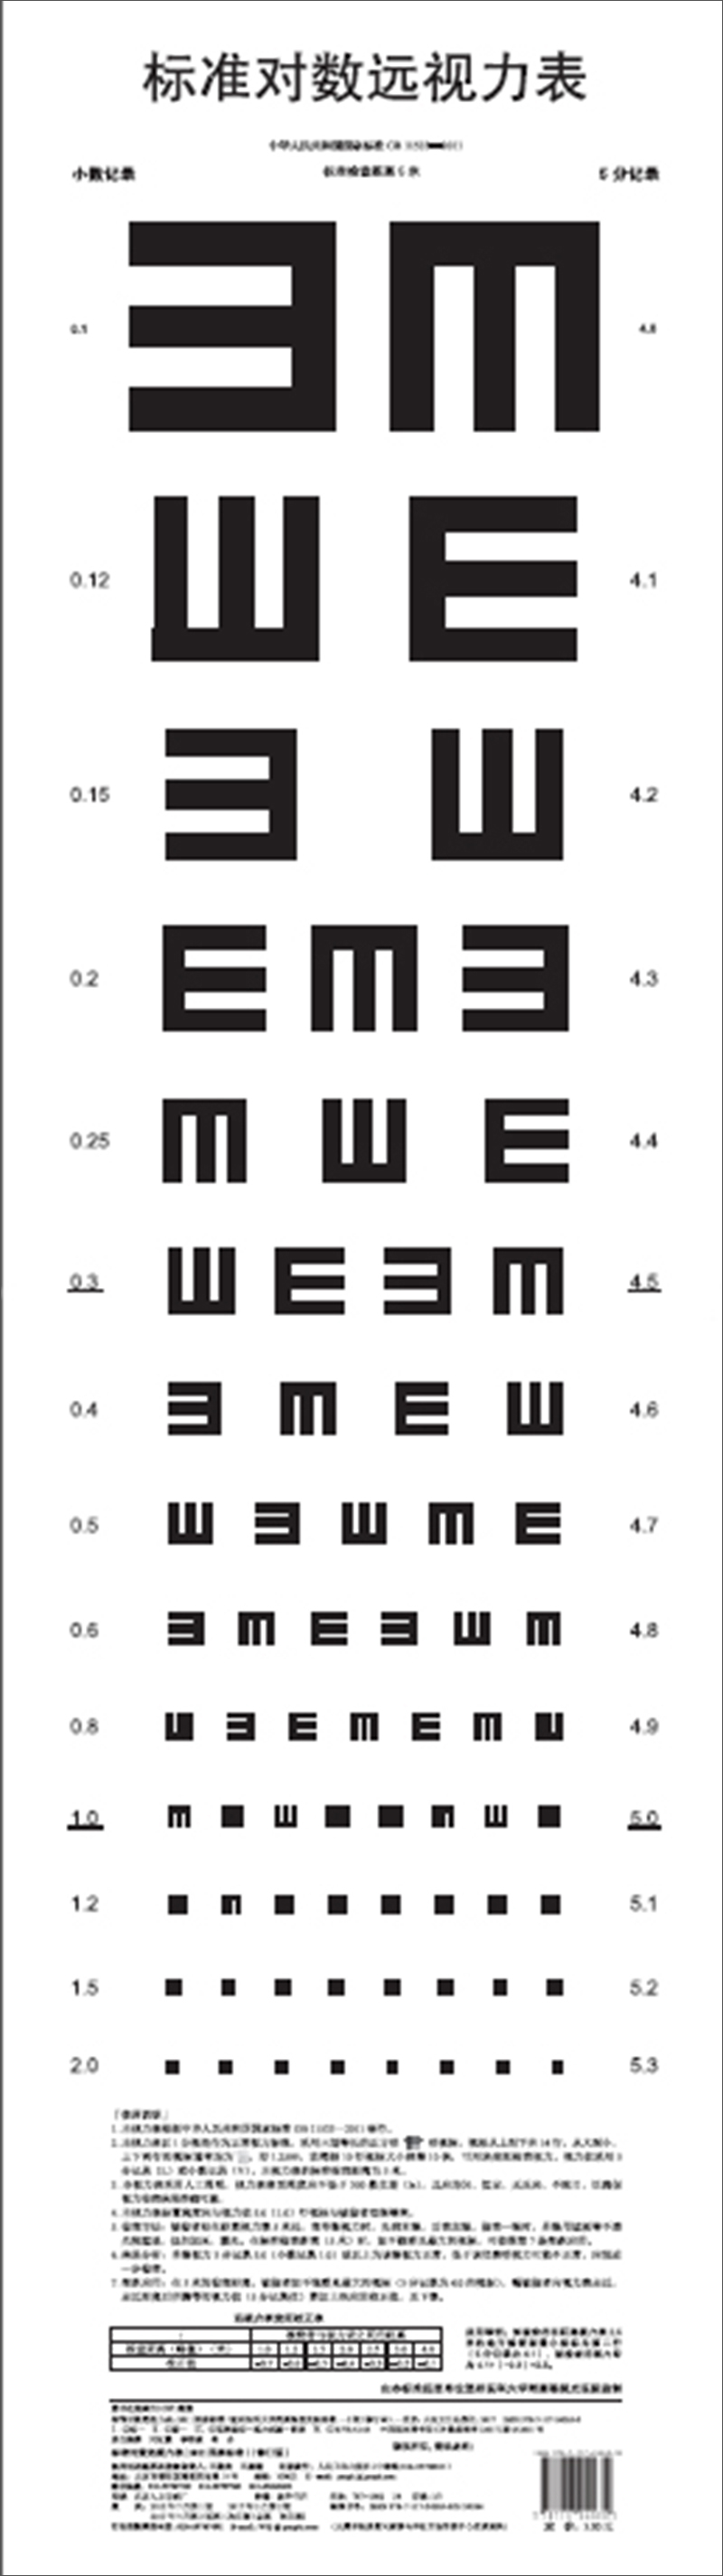 爱尔眼科视力表图片